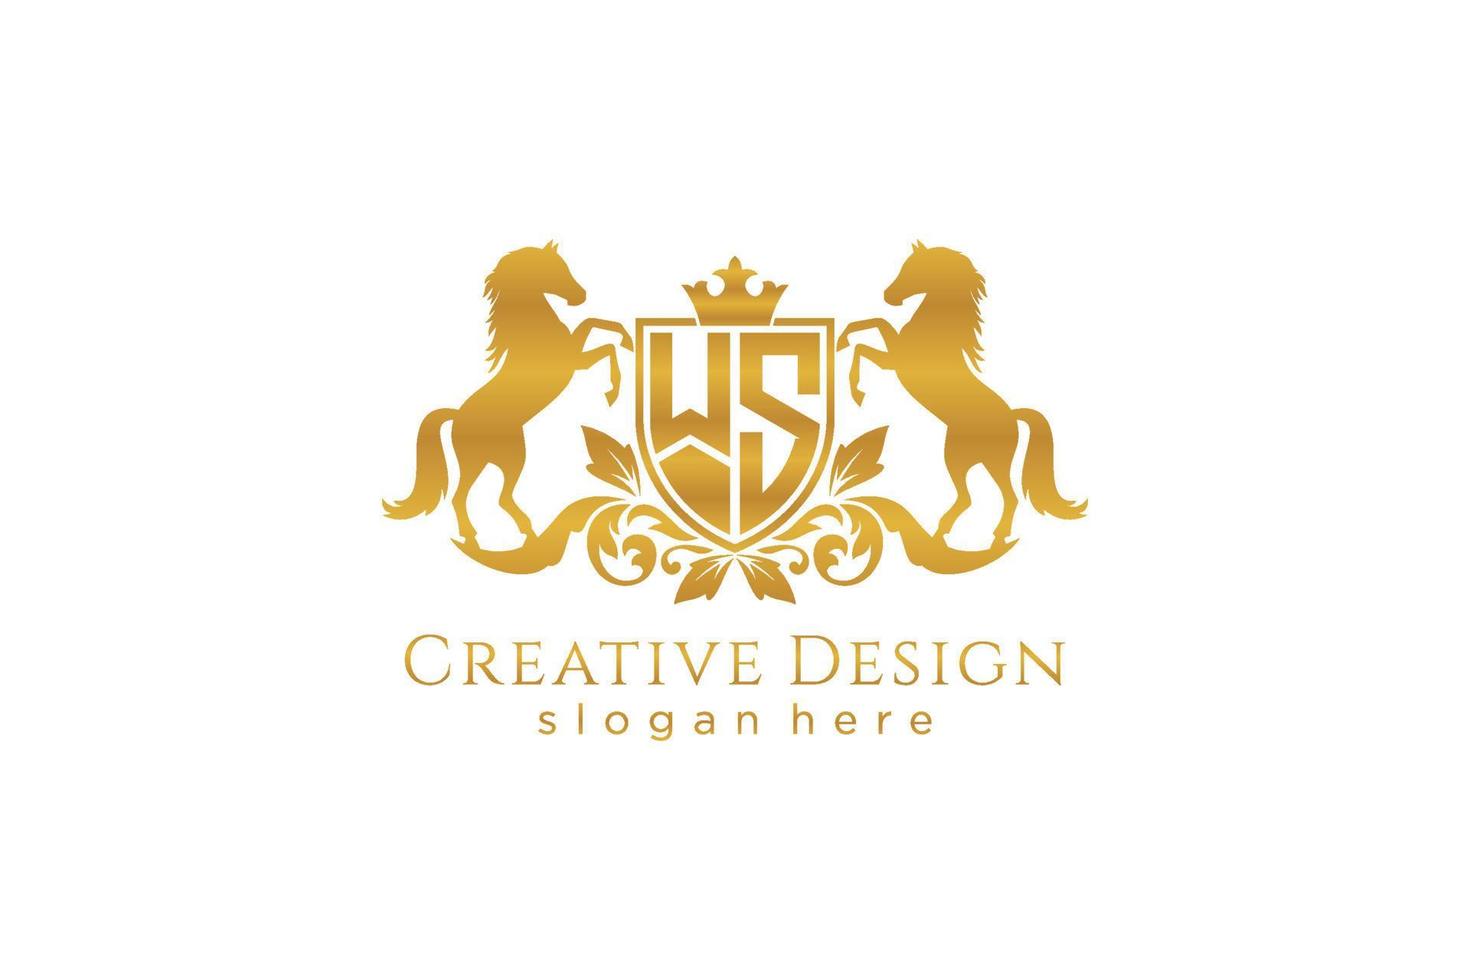 crista dourada retrô inicial ws com escudo e dois cavalos, modelo de crachá com pergaminhos e coroa real - perfeito para projetos de marca de luxo vetor